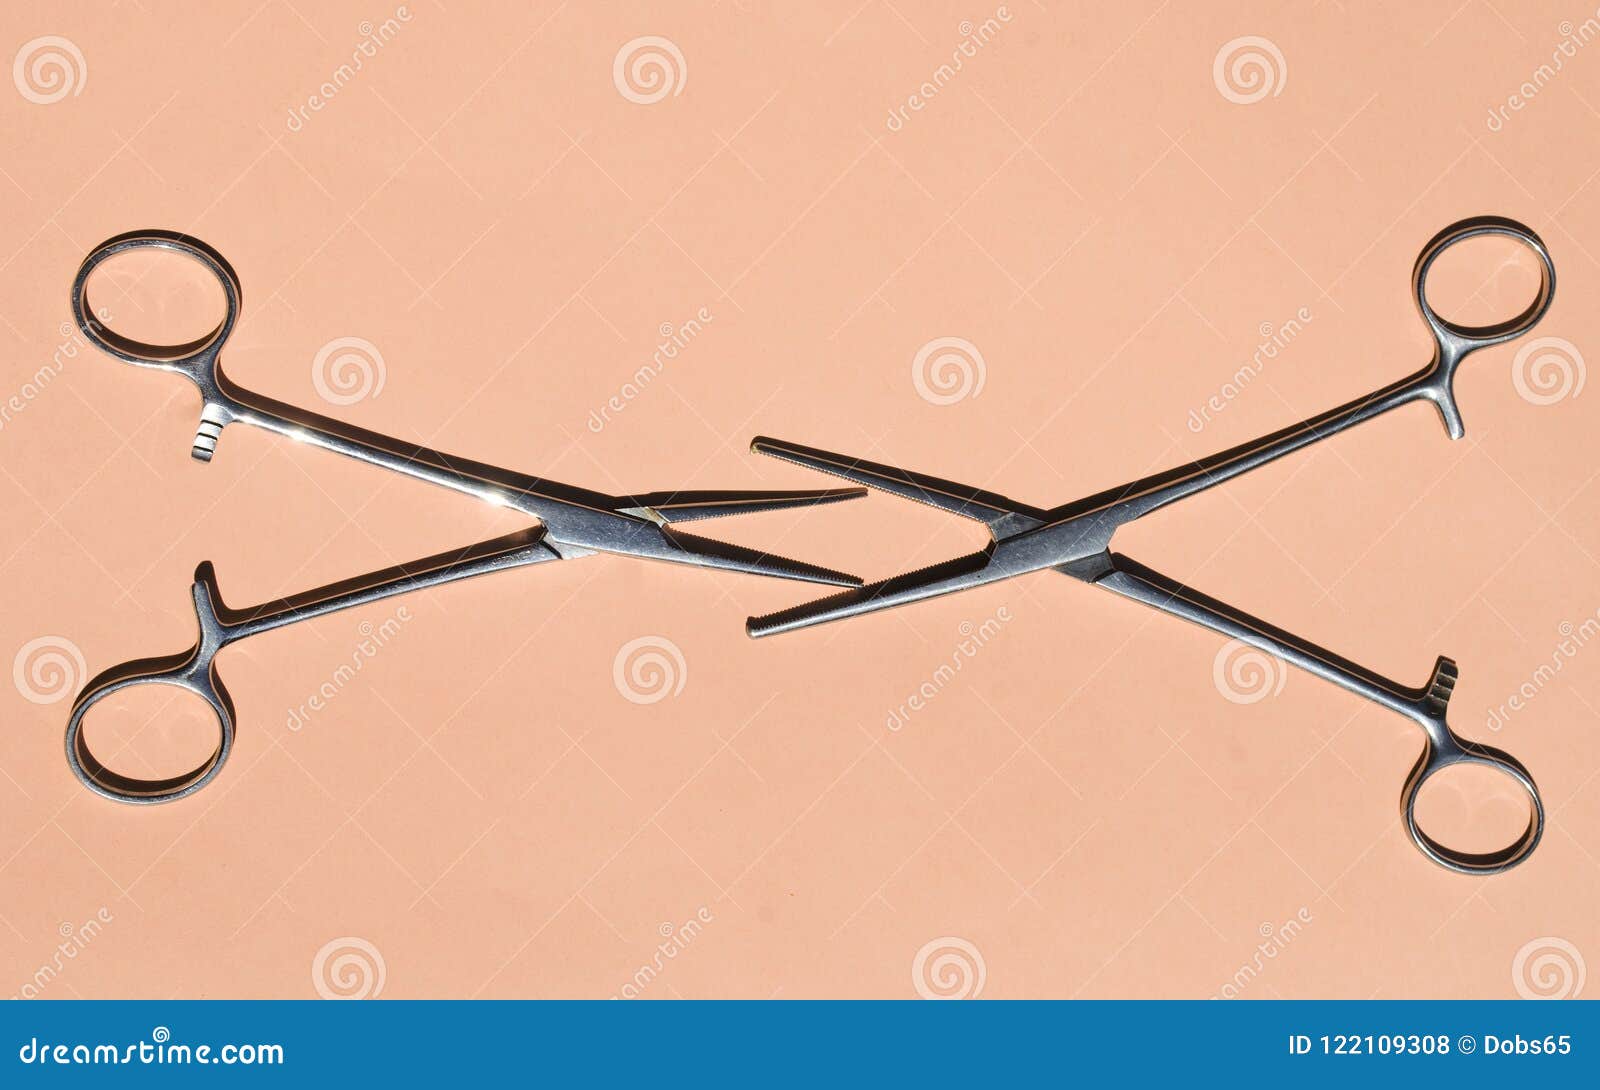 pair of steel surgical scissors